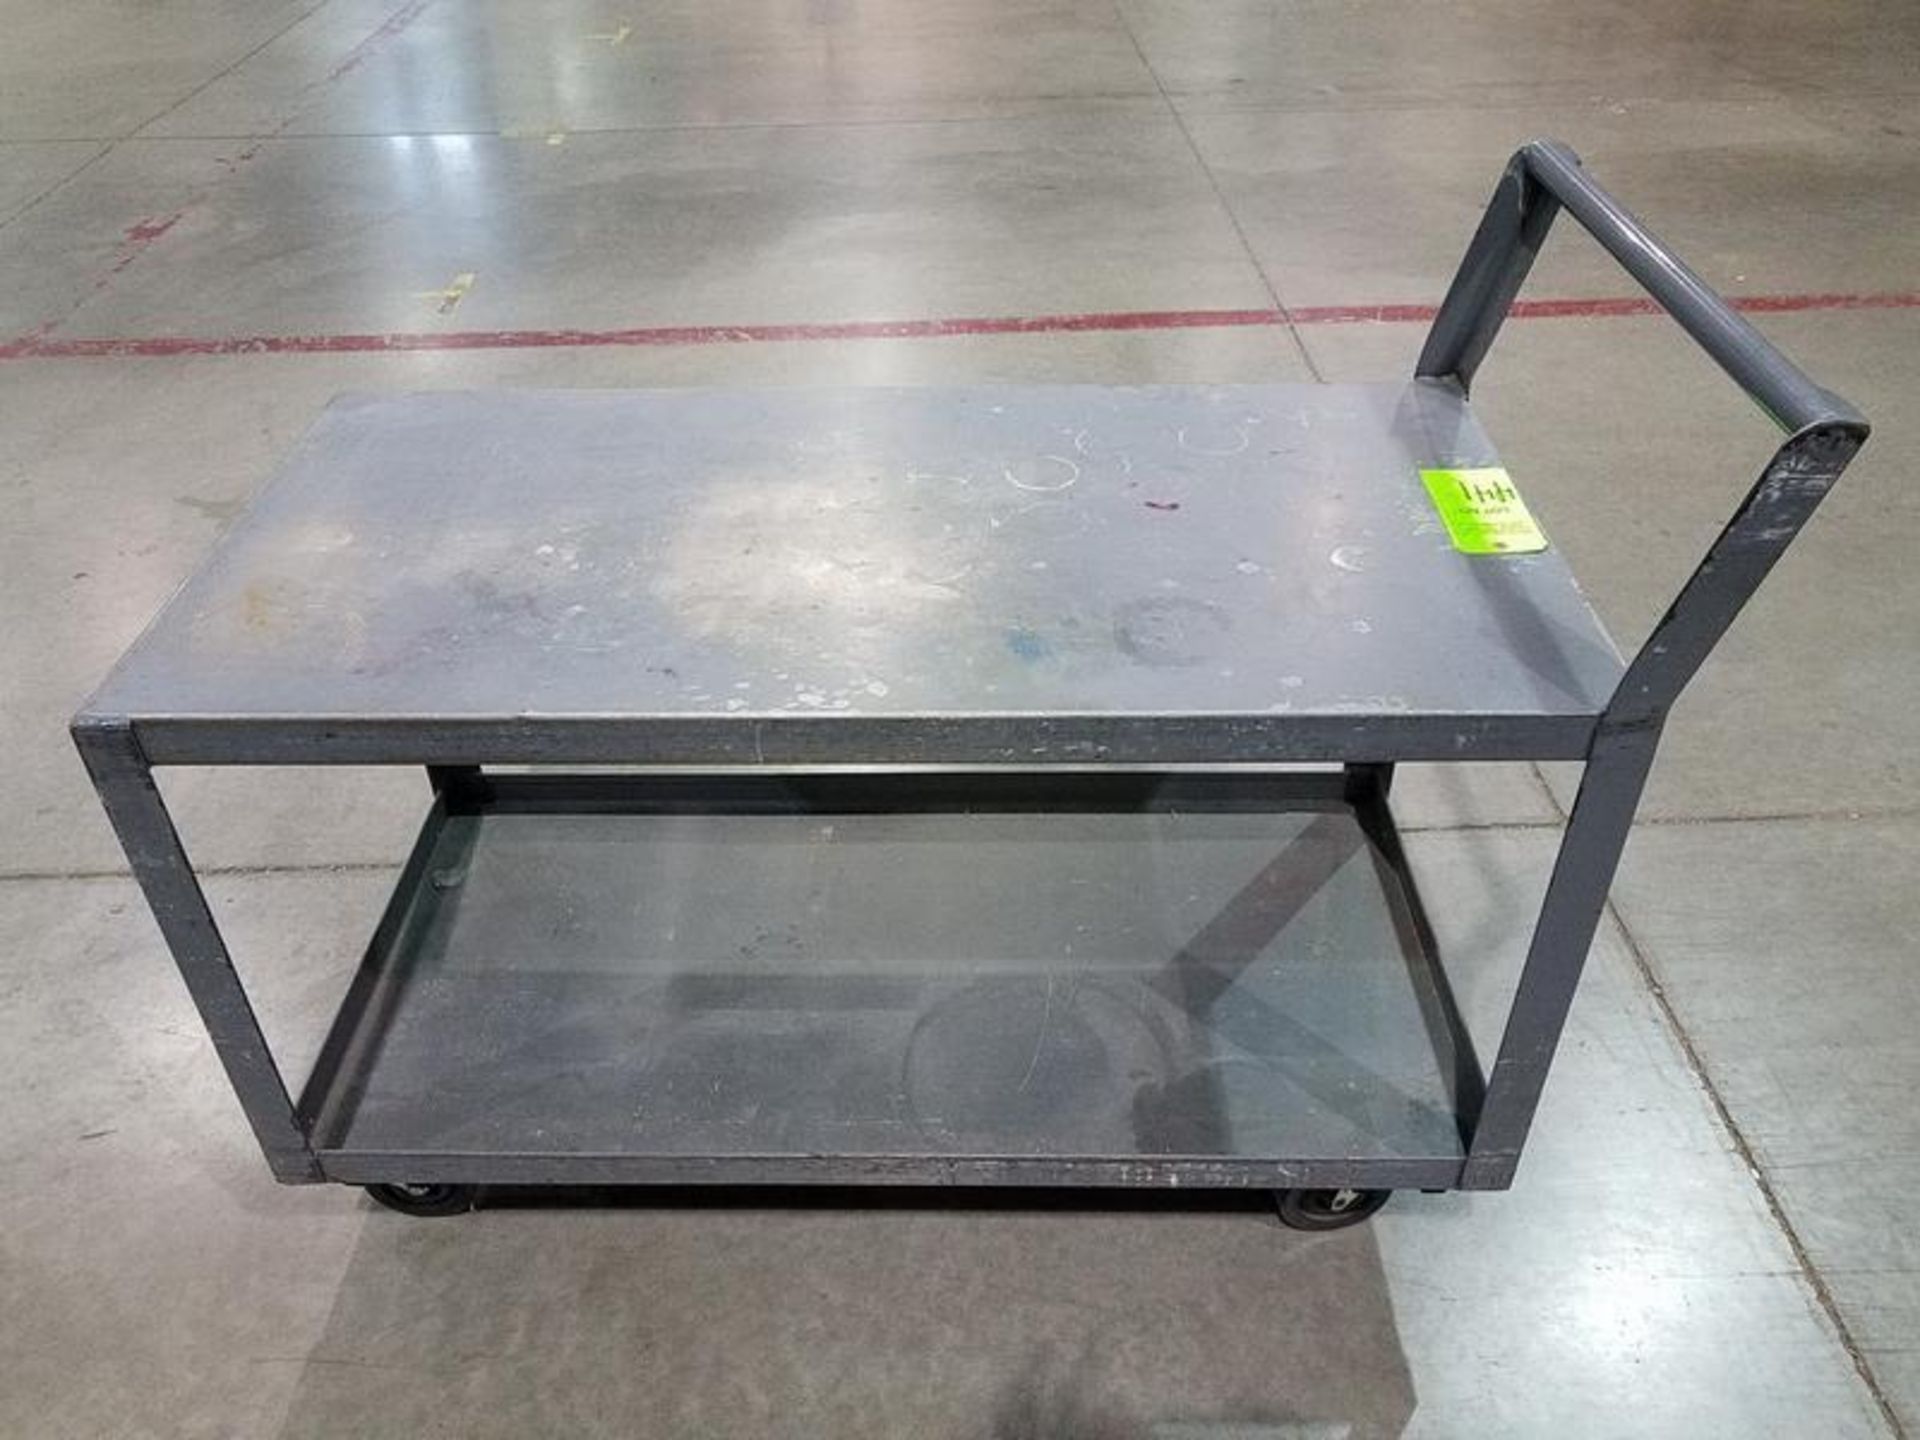 Steel Shop Cart, 2-Tier, 24 x 48